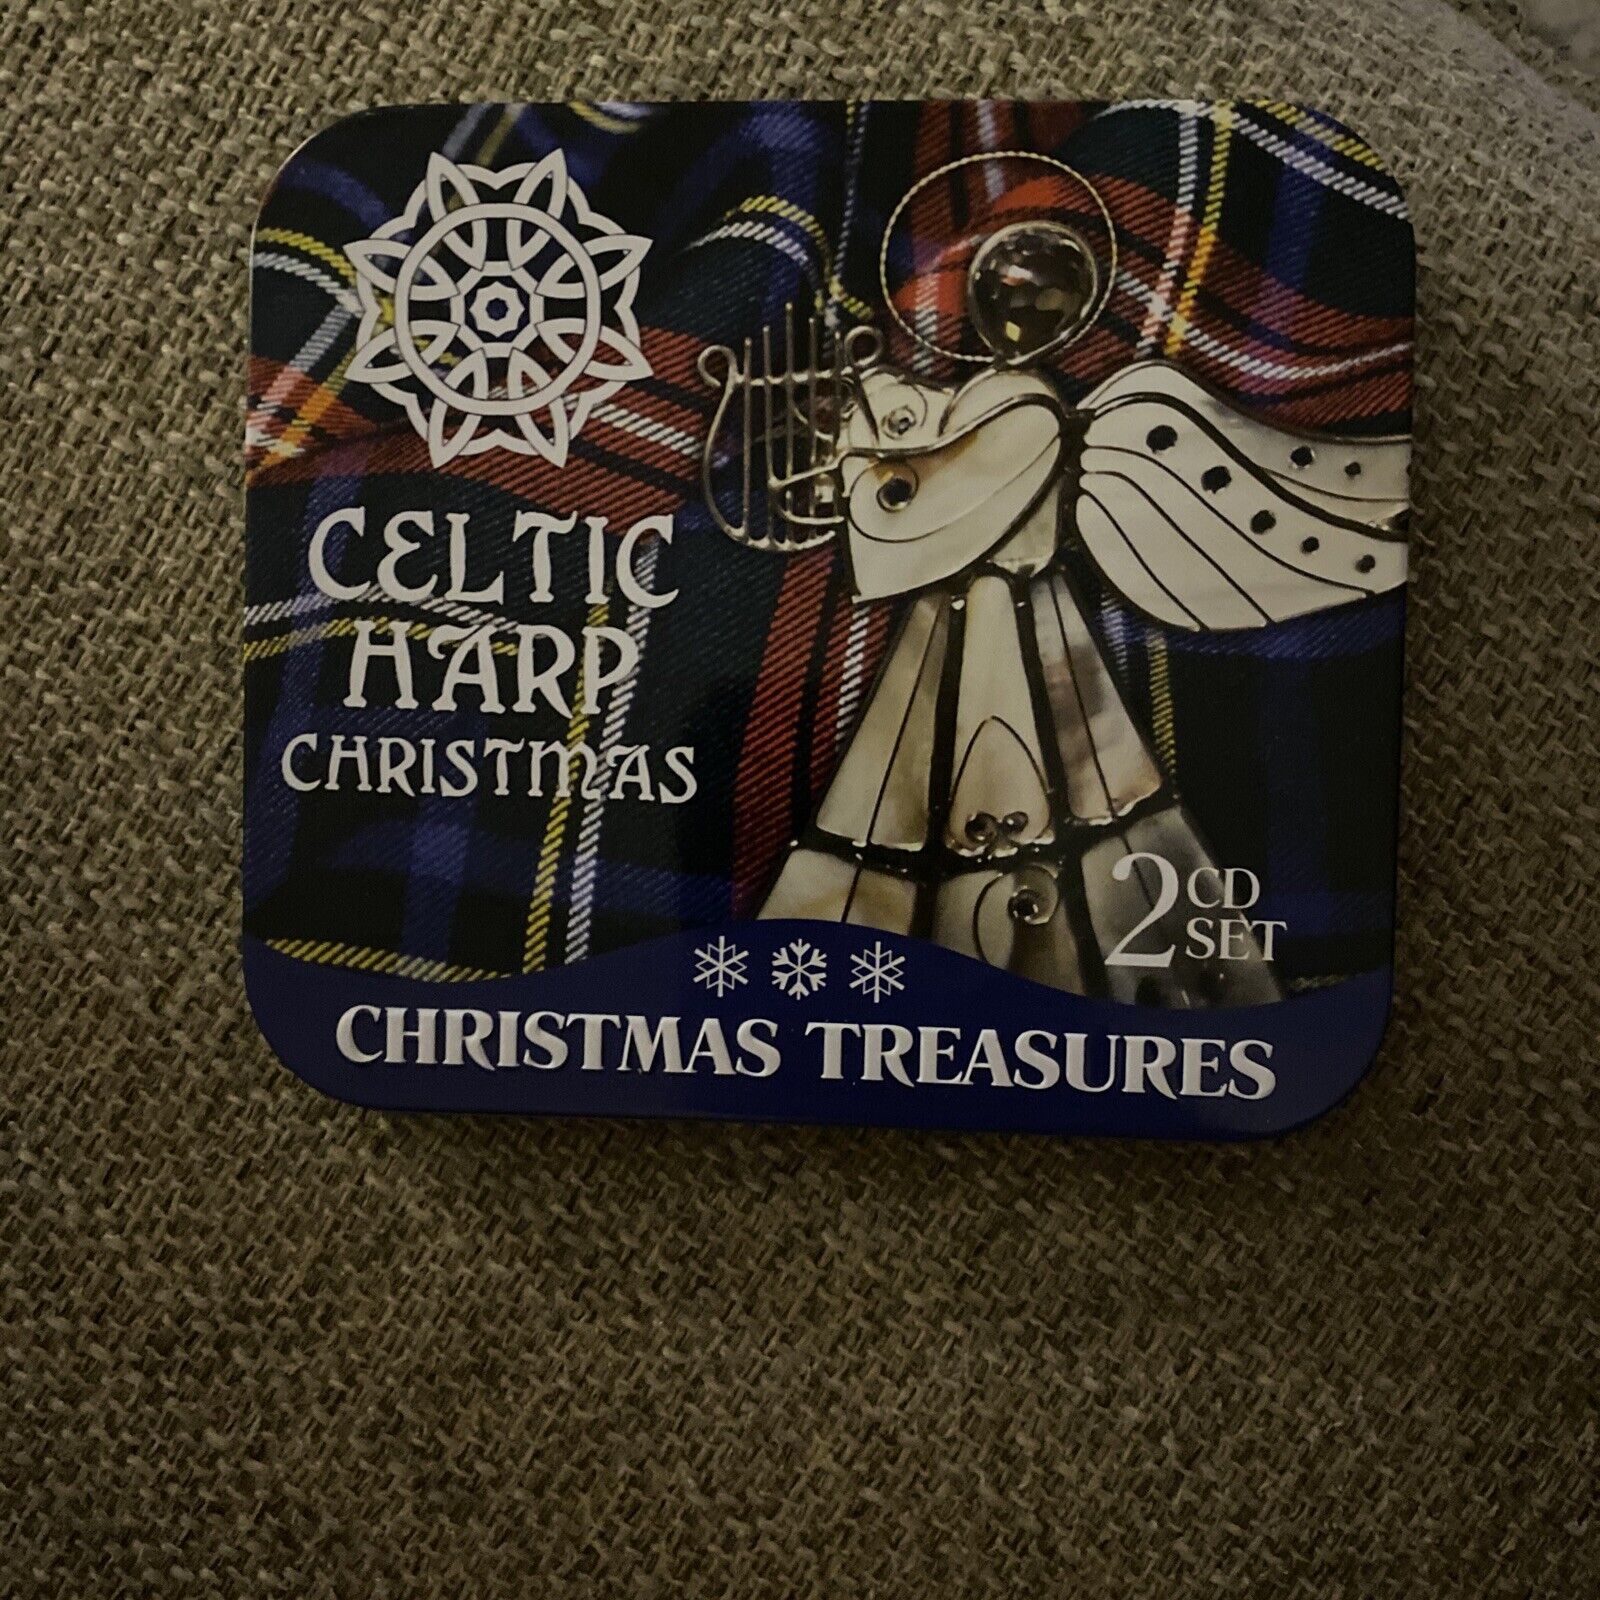 CELTIC HARP CHRISTMAS - Celtic Harp Christmas: Christmas Treasures - 2 CD BB3